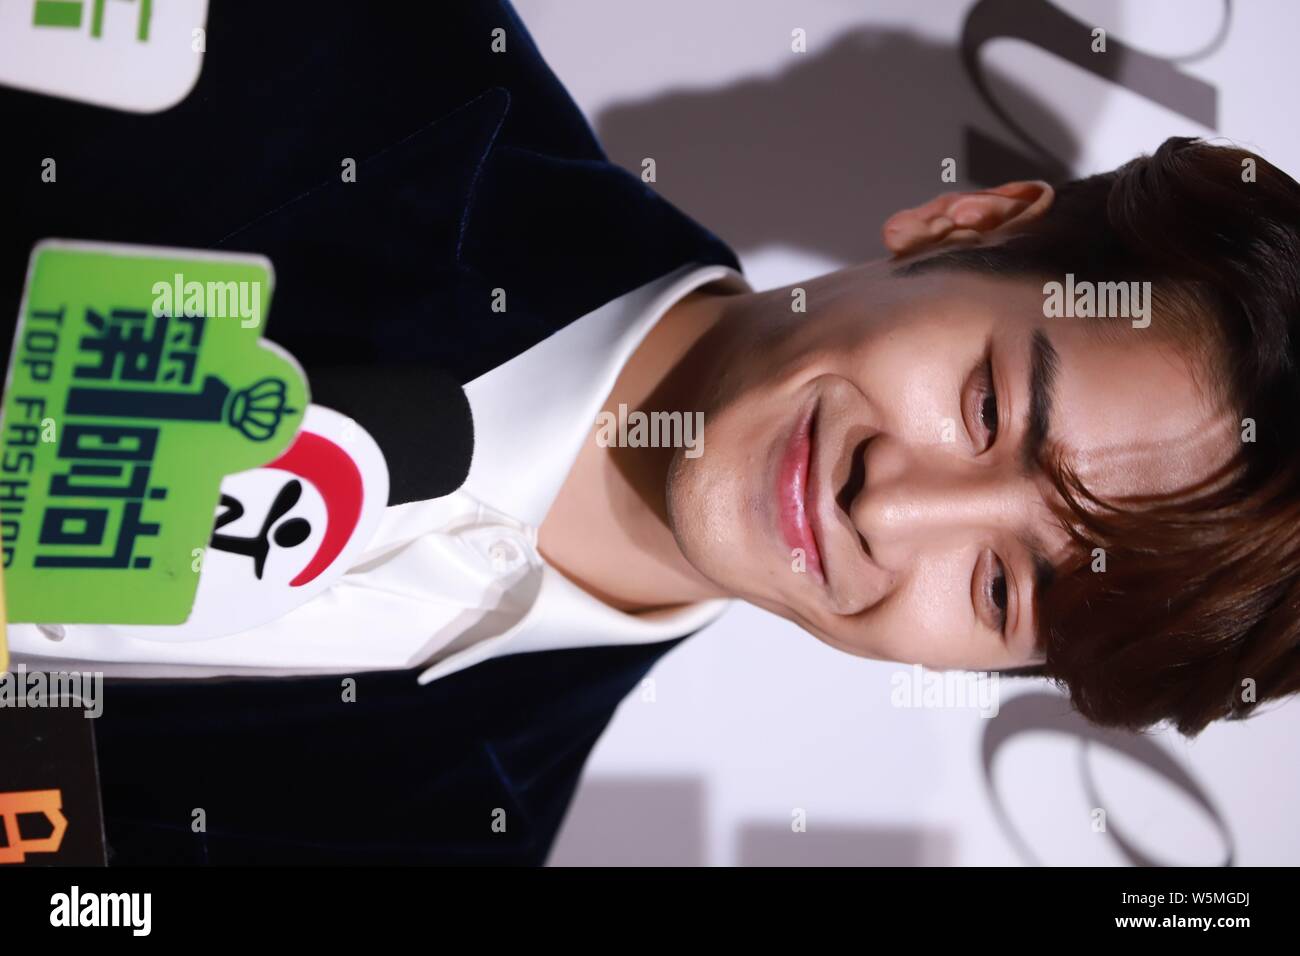 Download Jackson Wang Sweet Smile Wallpaper